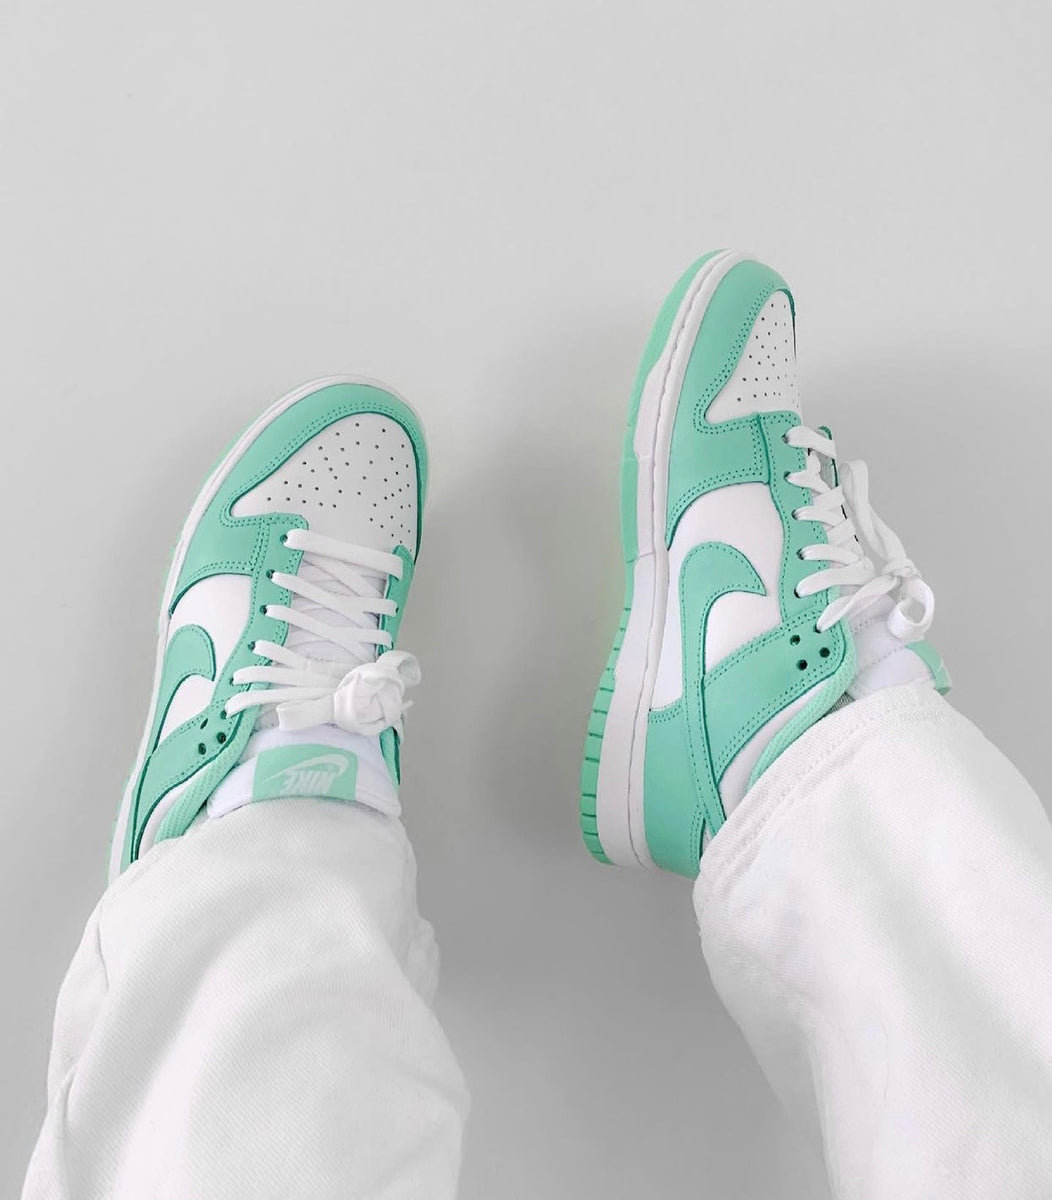 Wiens Aanpassing Induceren Hoe te stylen: de Nike Dunk Low Groene gloed – Sneakin